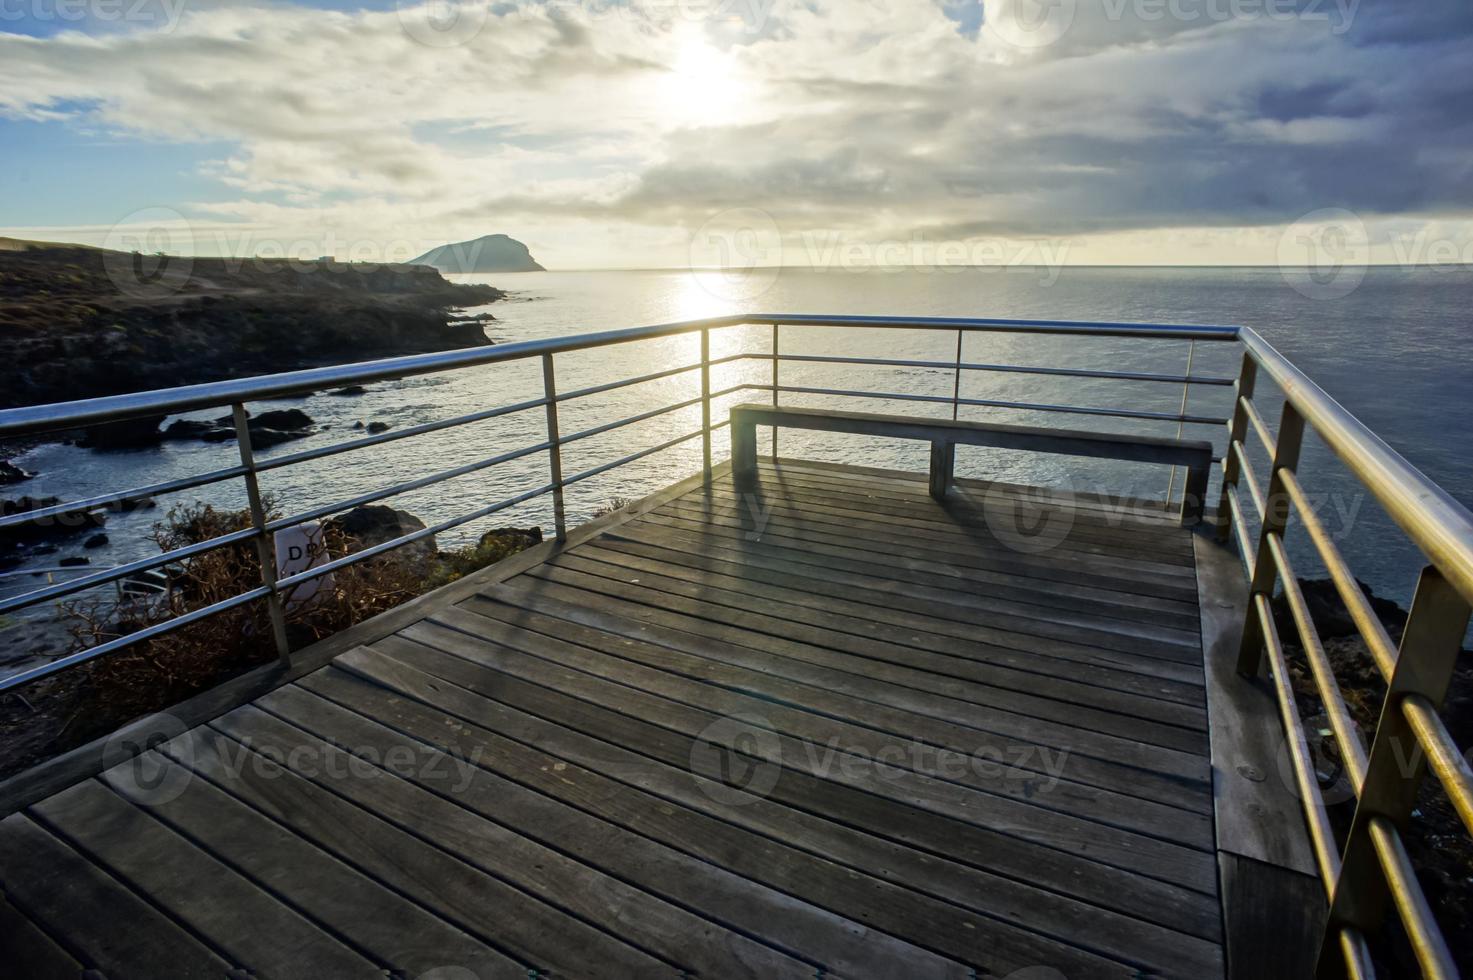 Beautiful pier view photo